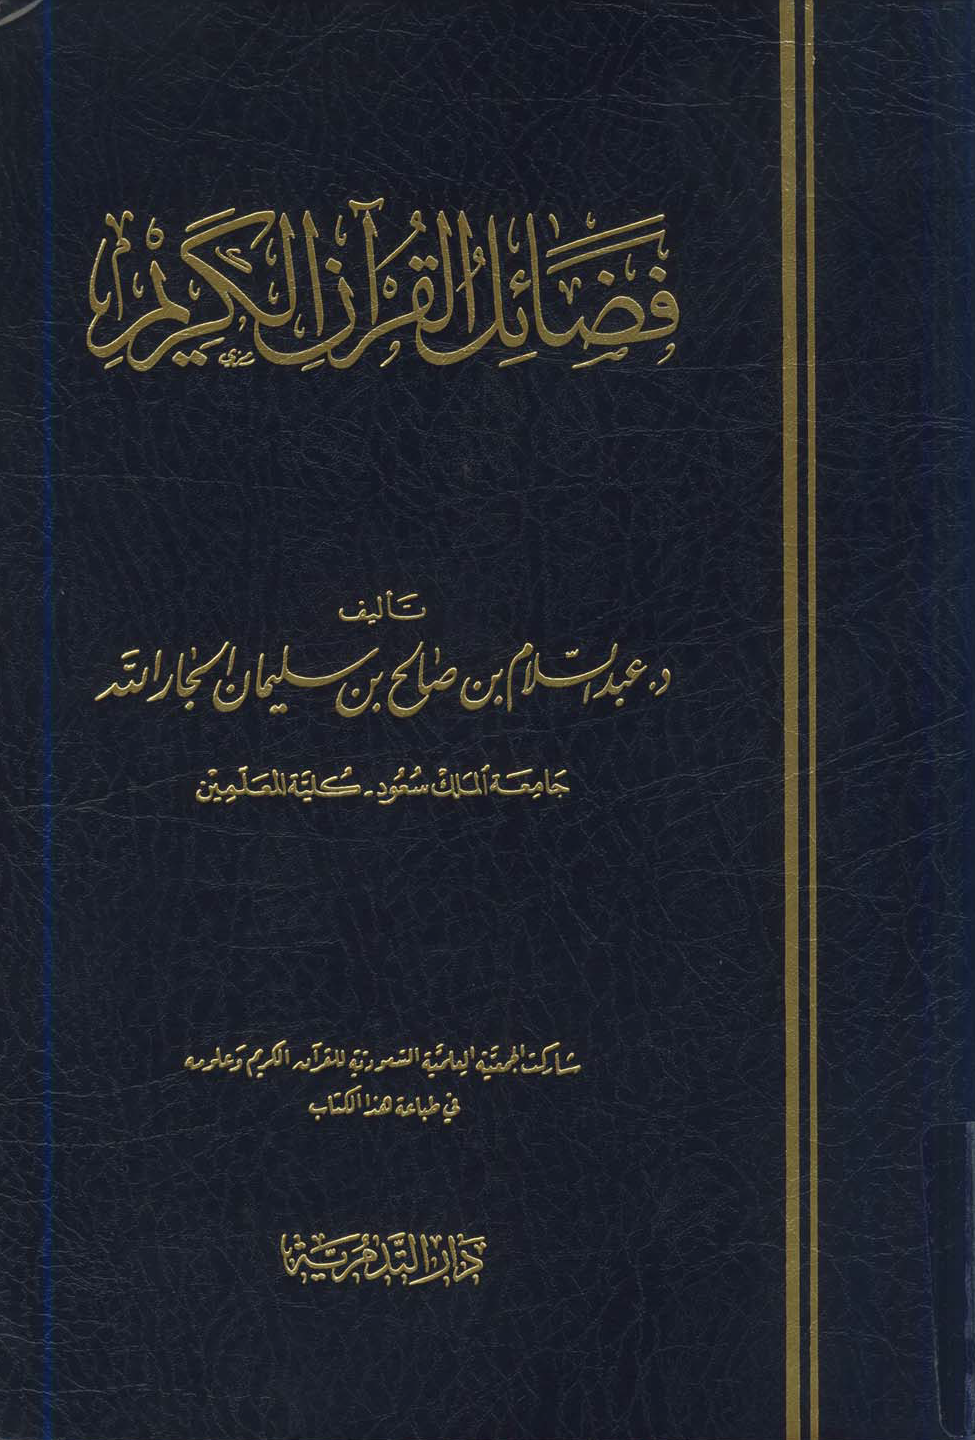 تحميل كتاب فضائل القرآن - عبد السلام الجار الله للمؤلف: الدكتور عبد السلام بن صالح بن سليمان الجار الله